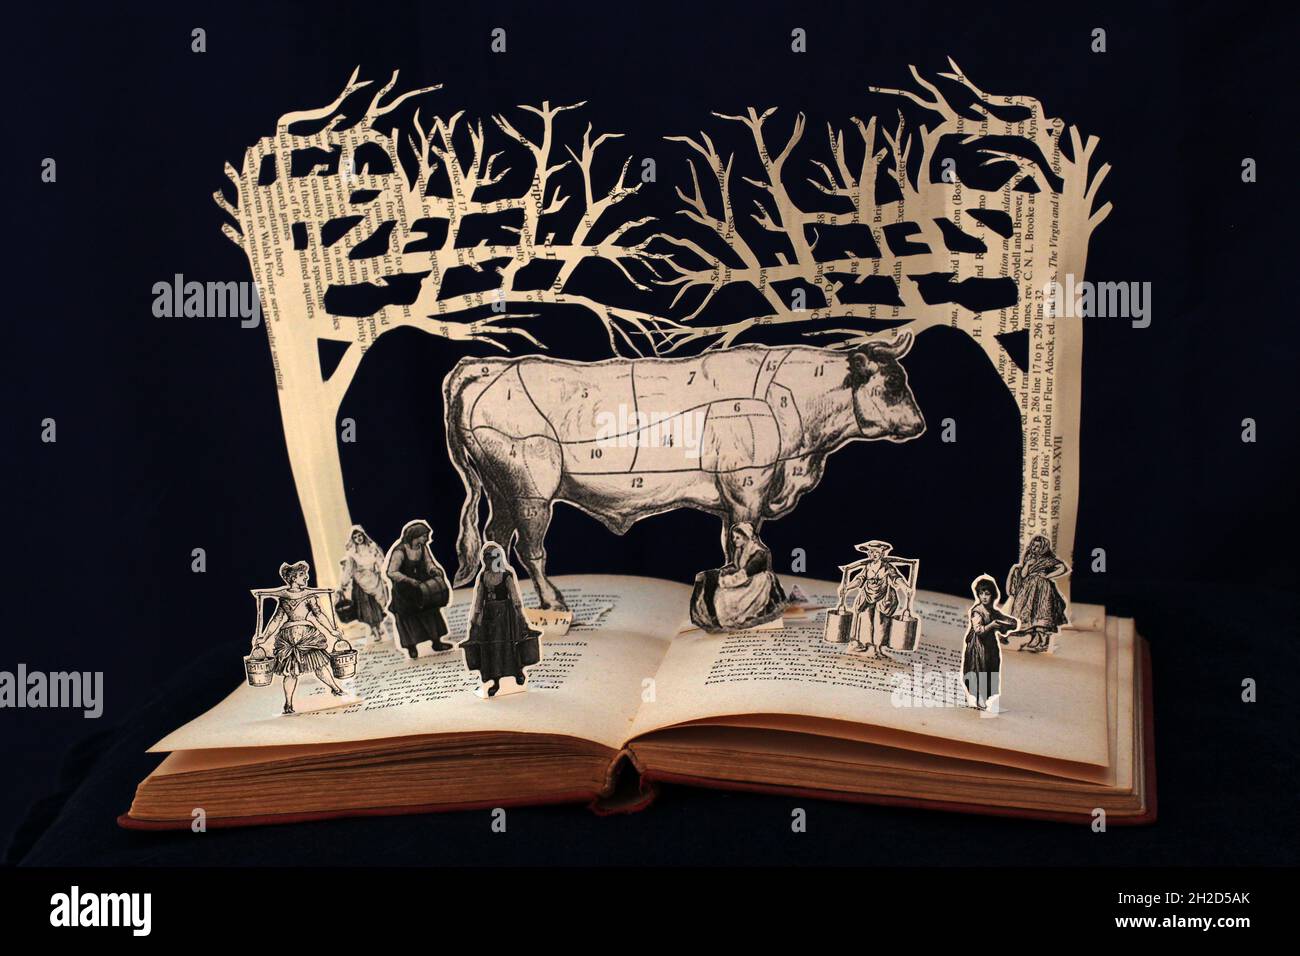 Scultura di libro di carta di otto maids una mungitura, un'illustrazione gigante della mucca circondata da munghilkmaids. Foto Stock